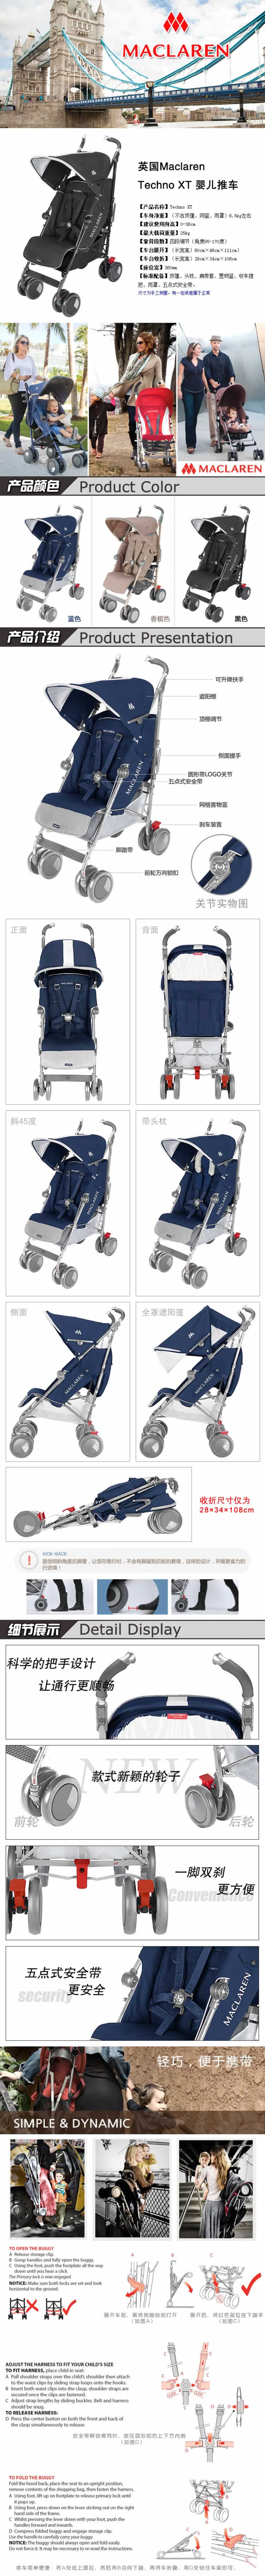 婴儿推车置物车爬行毯婴儿用品描述